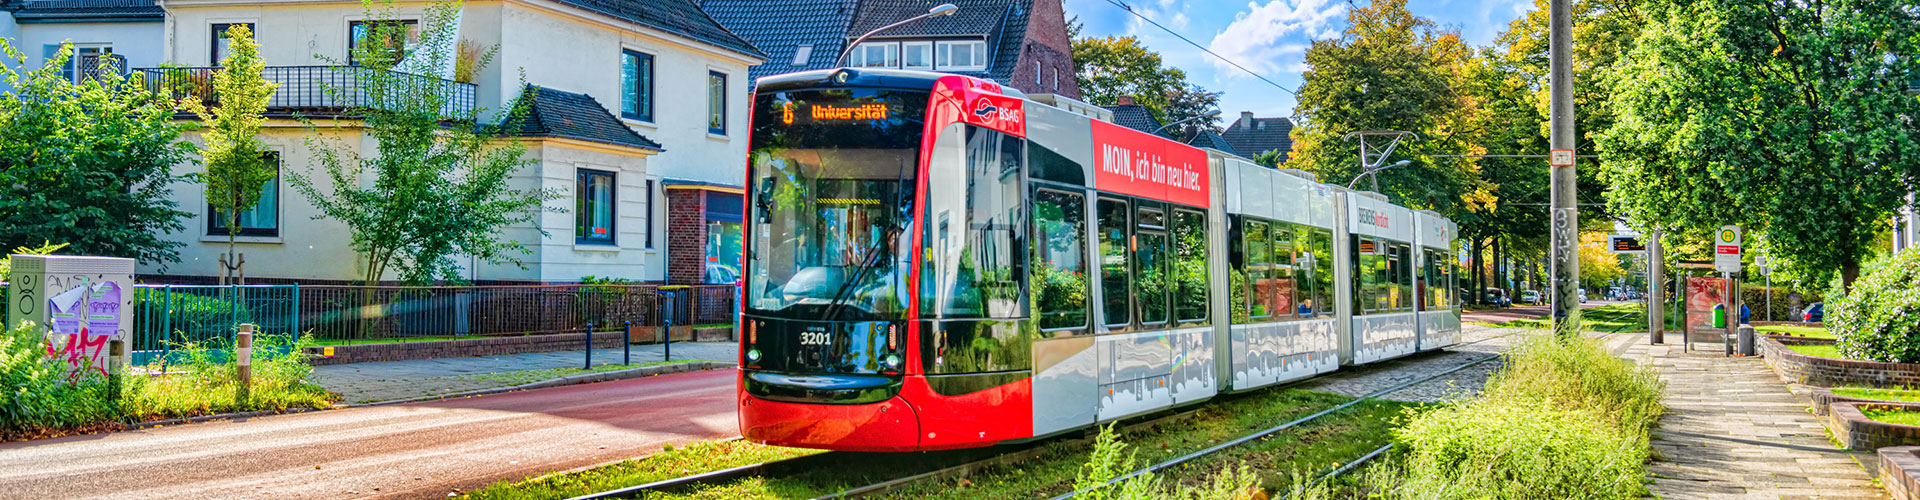 Bremens neue Straßenbahn Nordlicht auf dem Weg durch die Stadt.